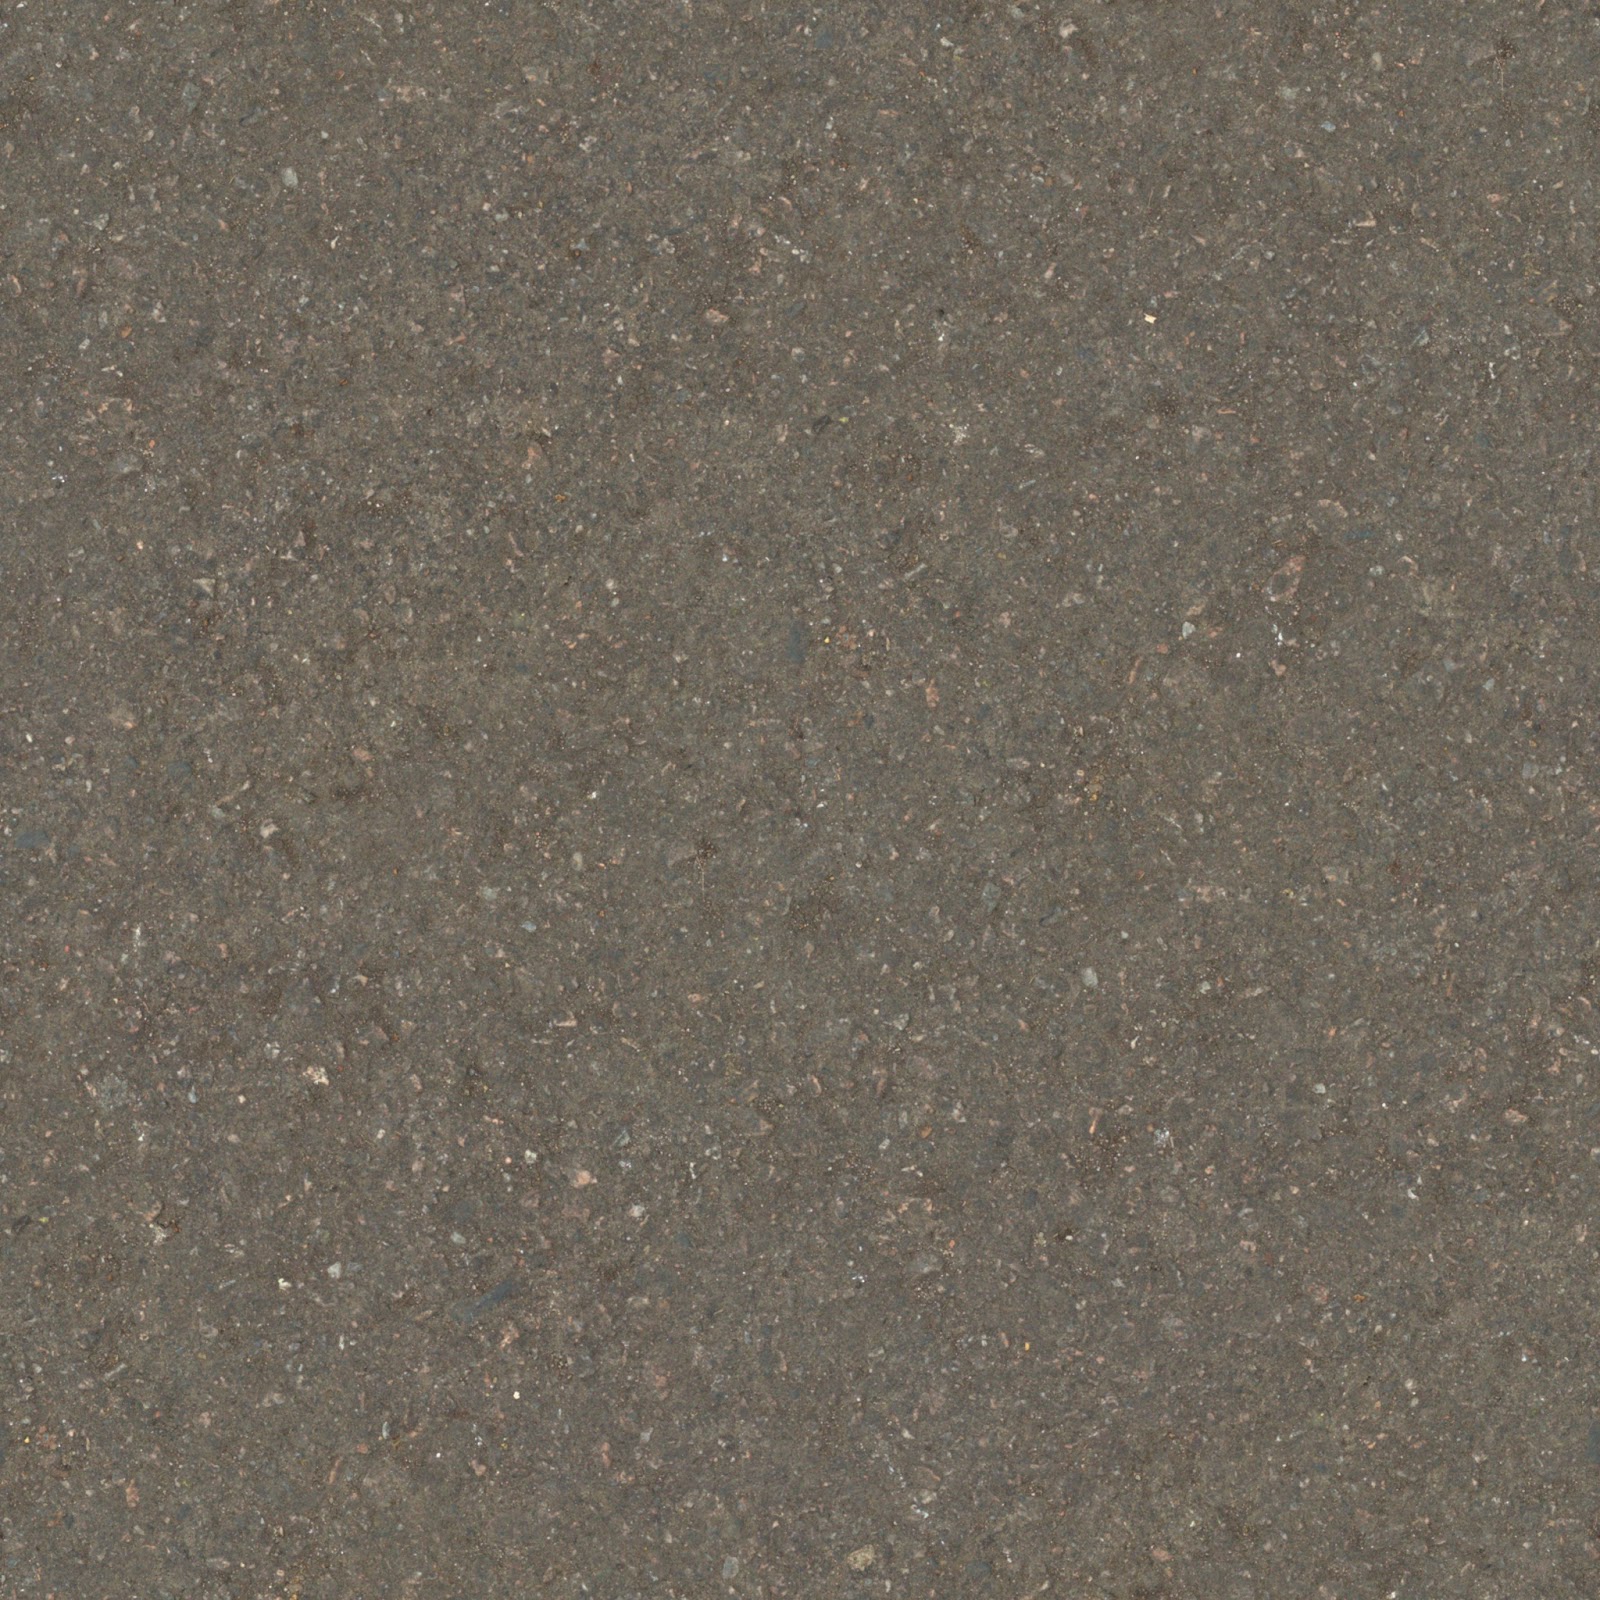 Dirt ground floor feb_2015 seamless texture 2048x2048